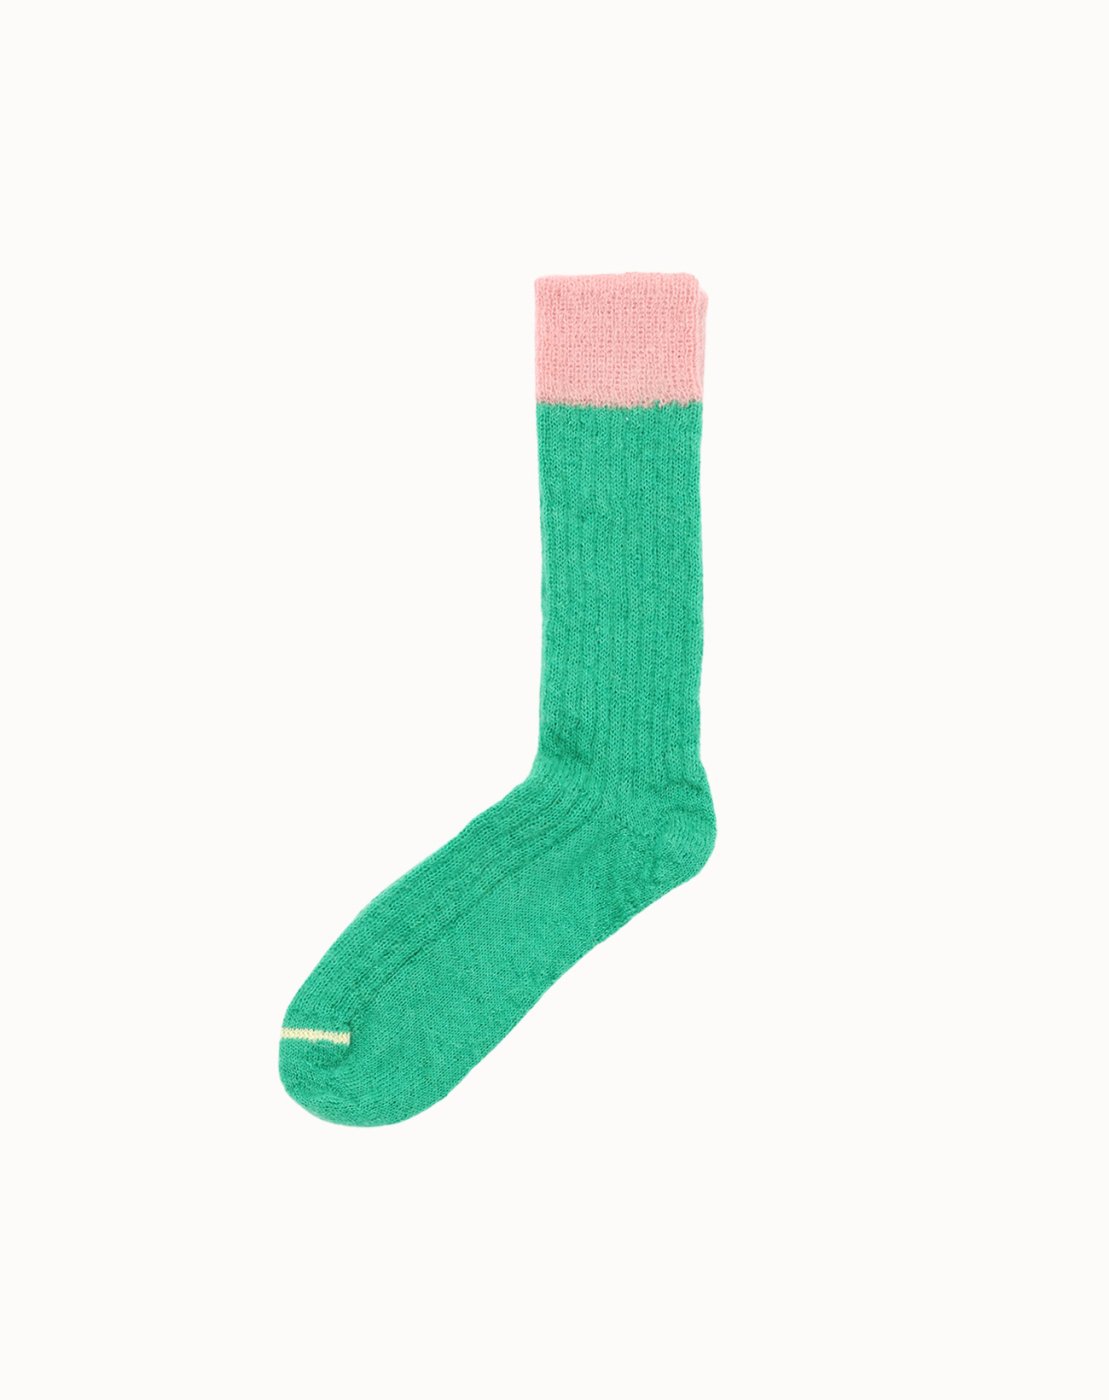 leur logette - 【Corgi x leur logette】 Mohair Socks - Green